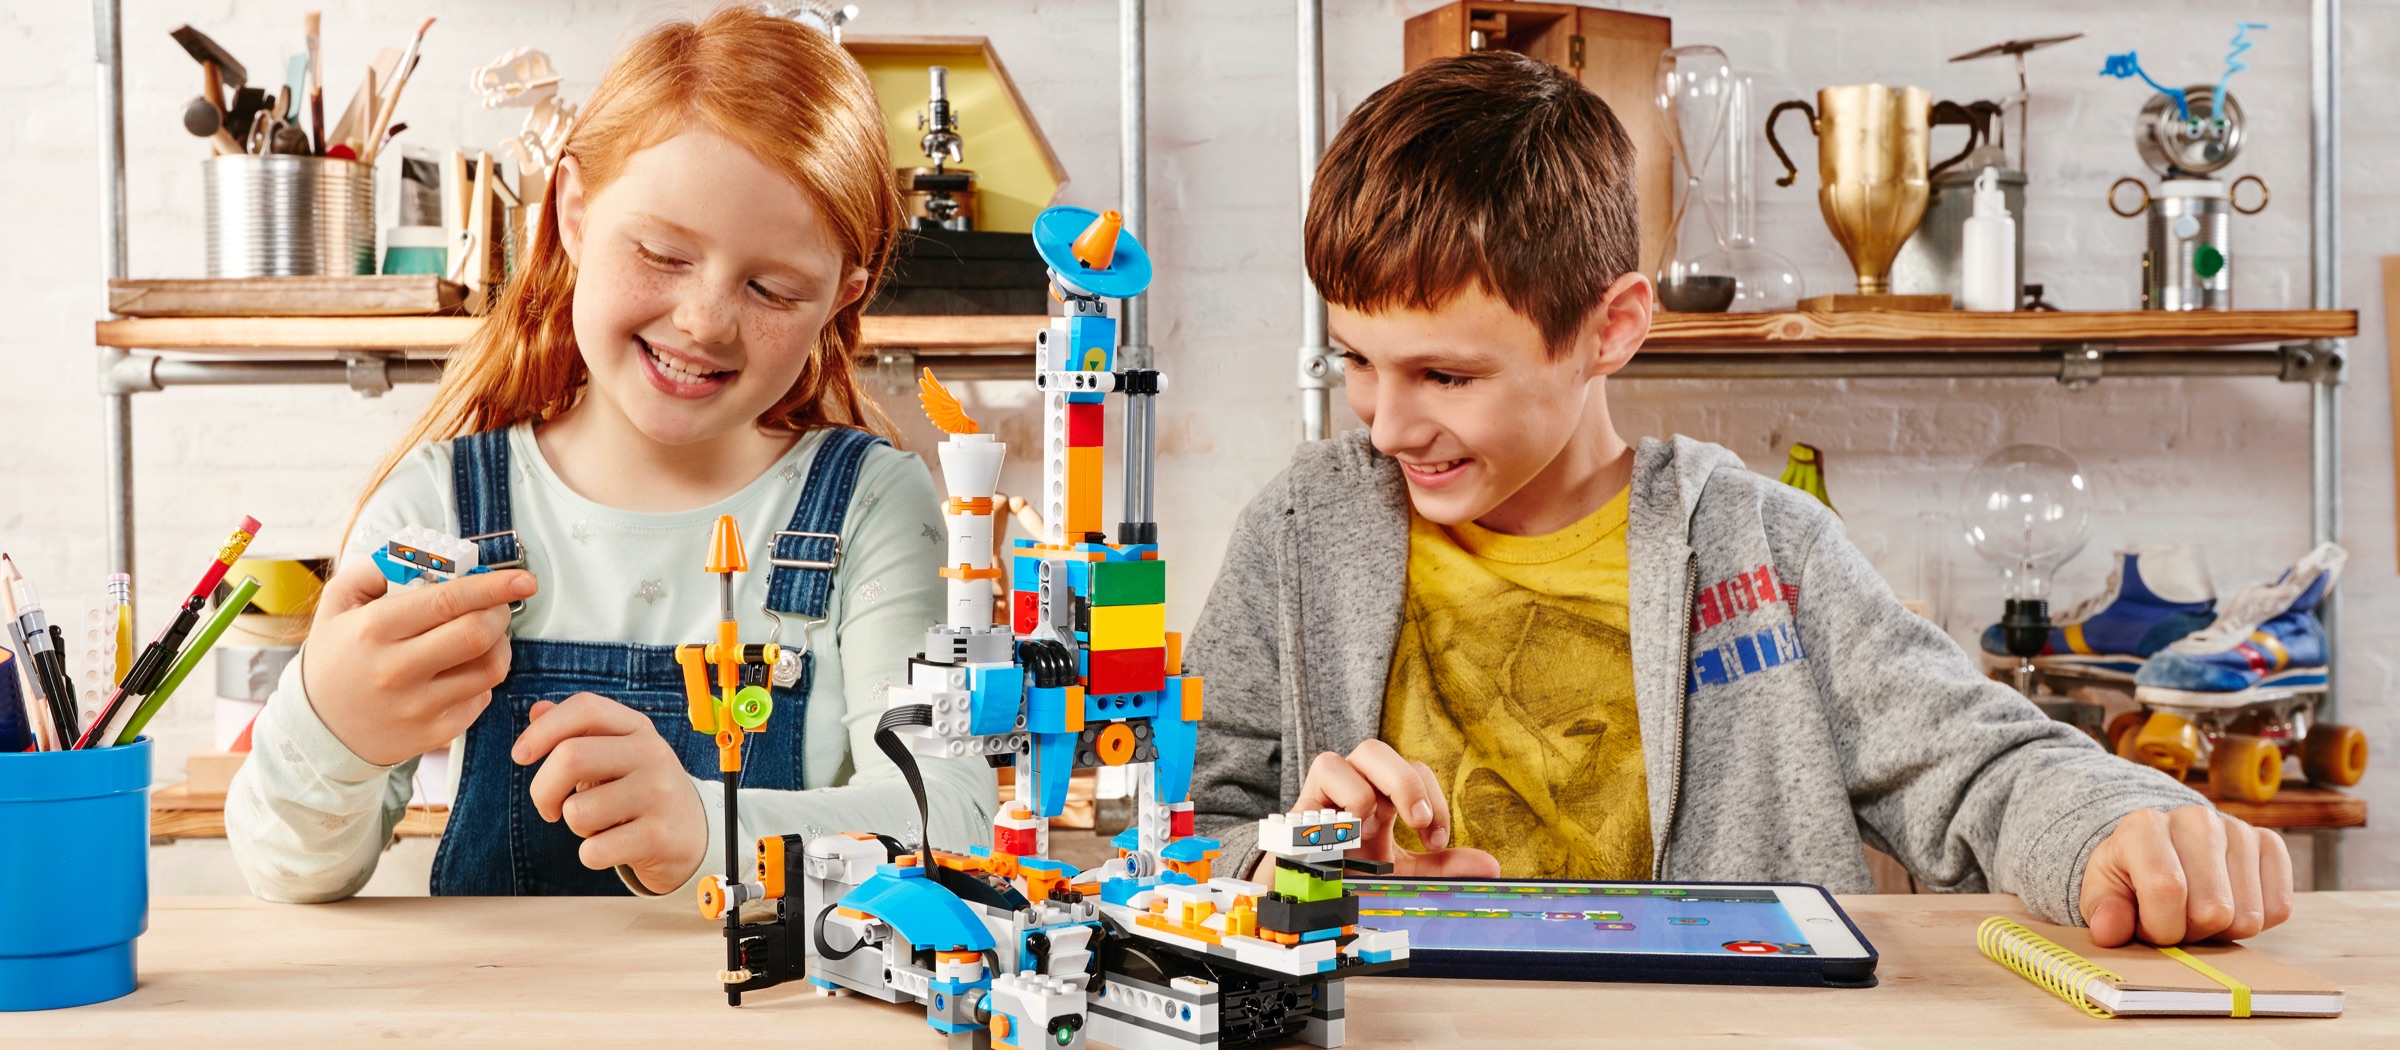 ROBOT impilabile in legno-SC-WSR Classico Tradizionale Giocattolo Di Legno Costruzione ROBOT LEGO 